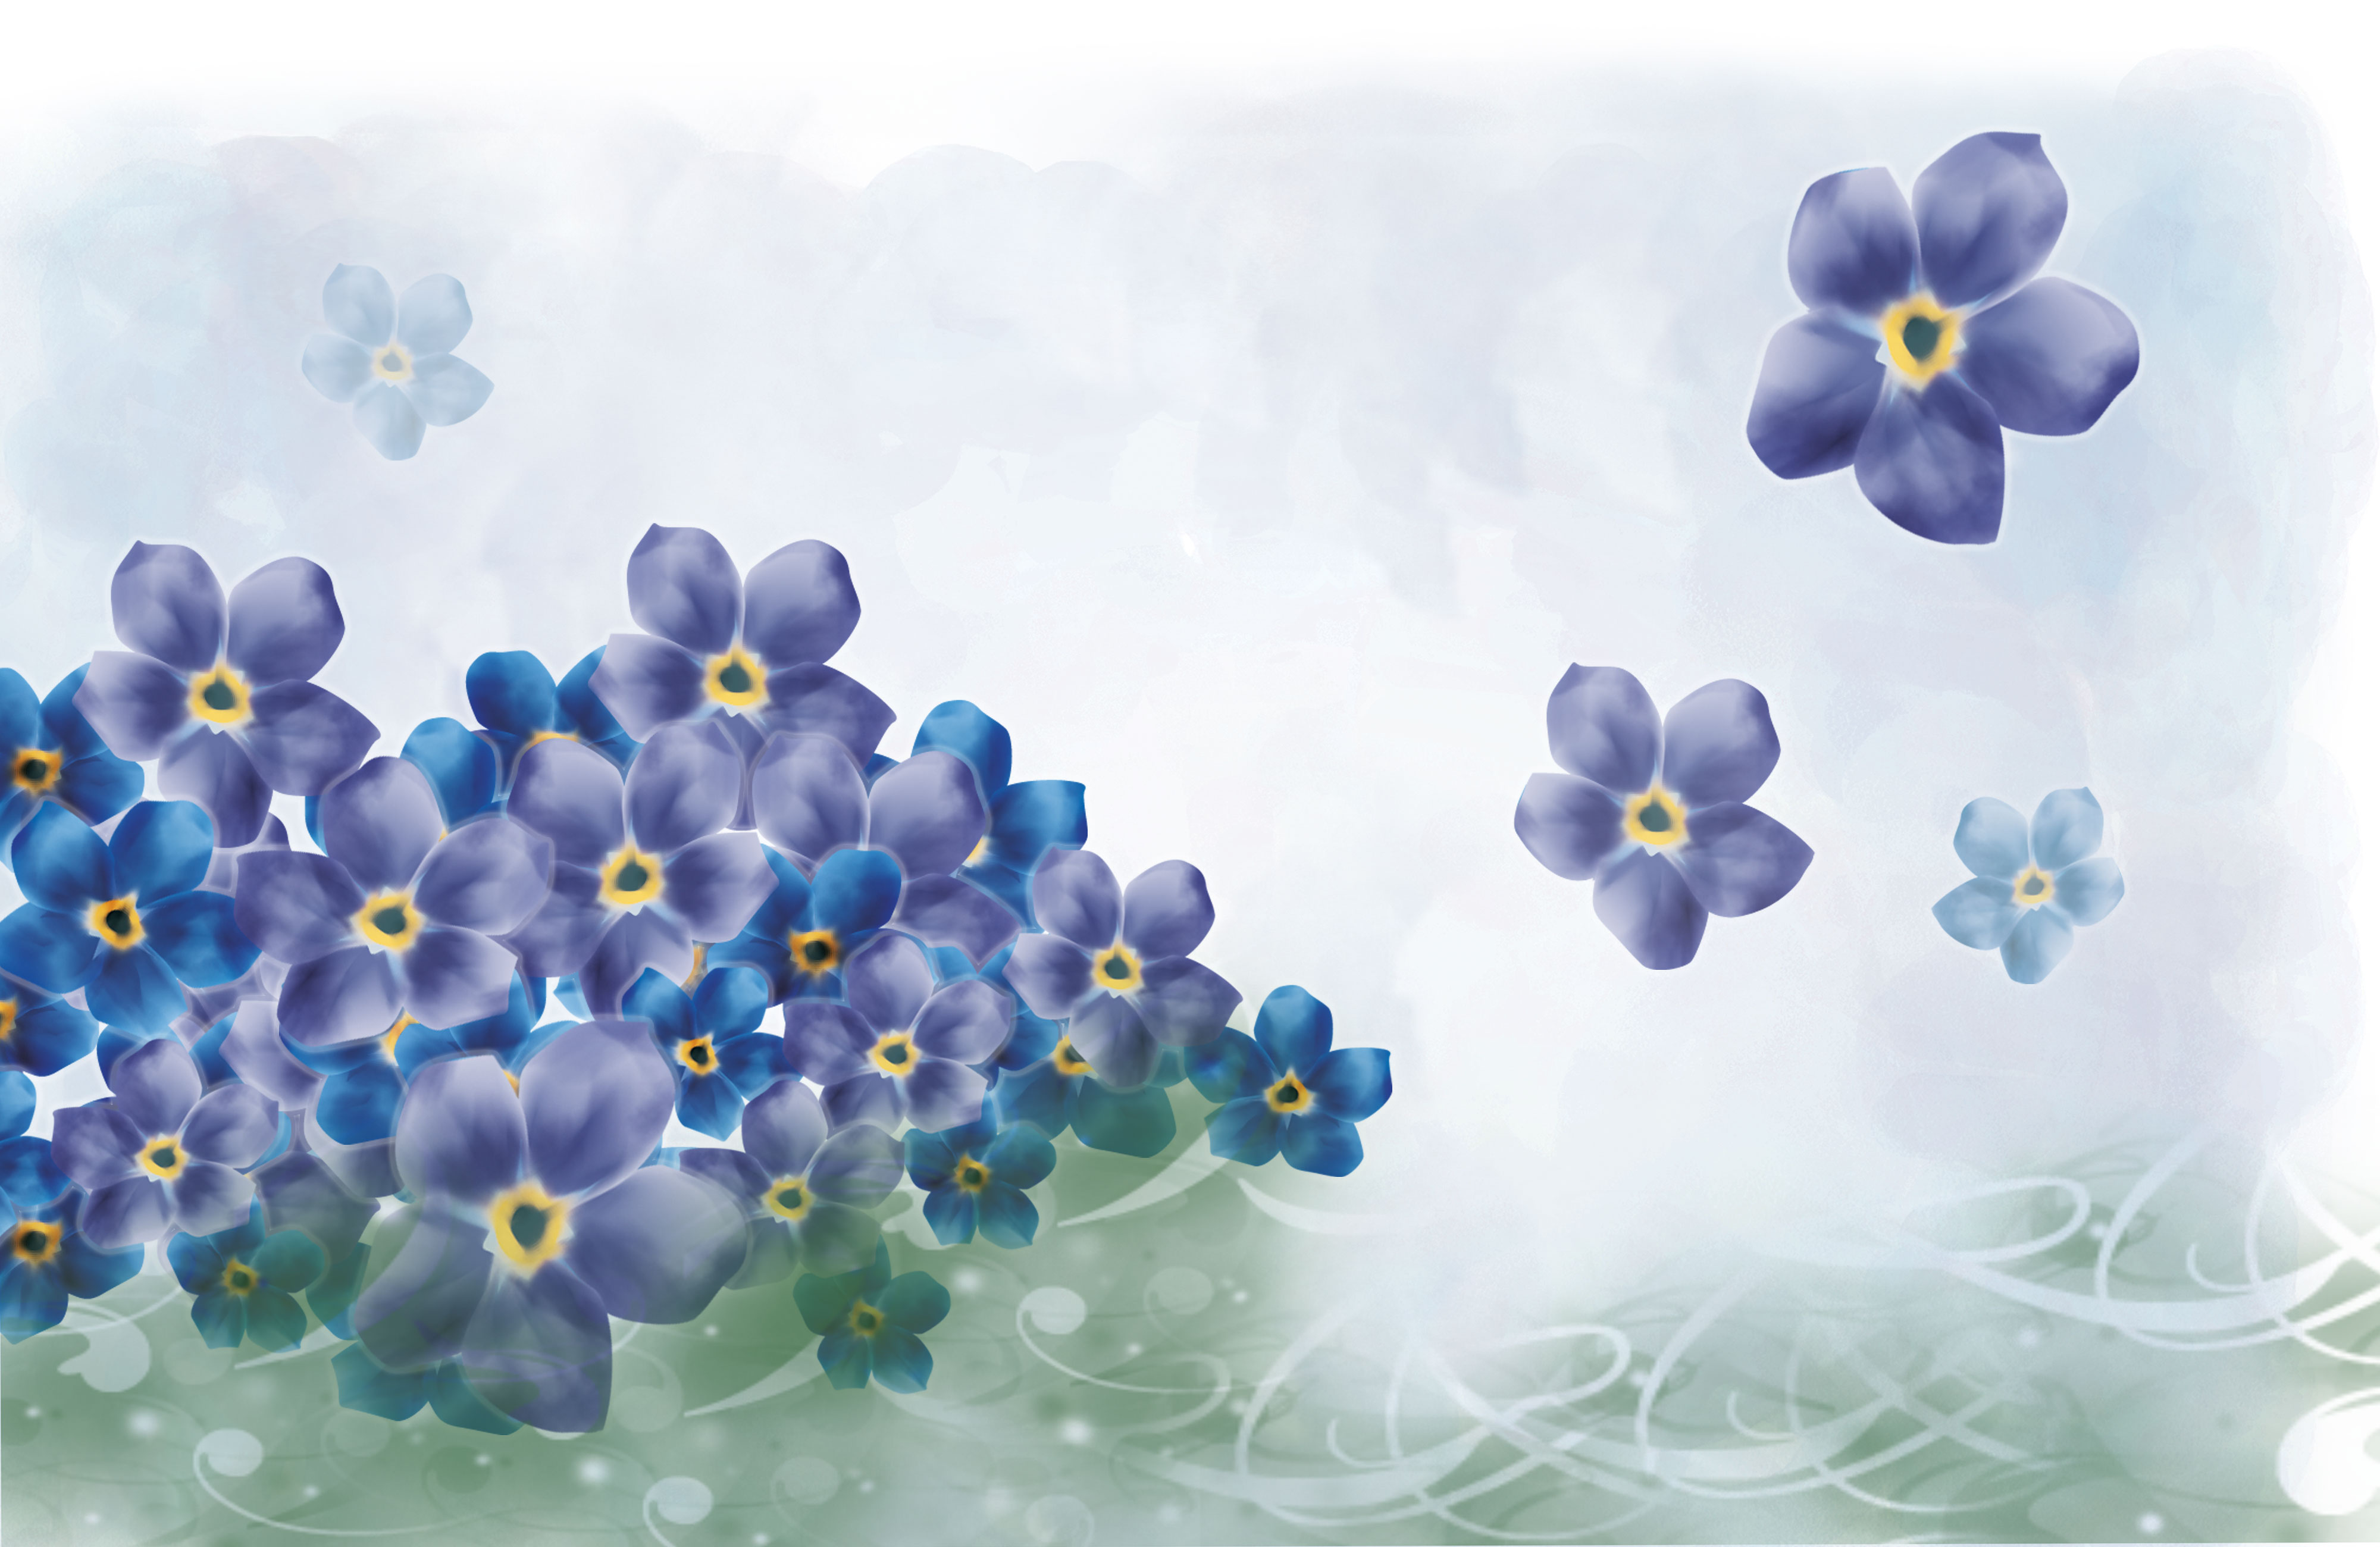 青い花のイラスト フリー素材 背景 壁紙no 340 青紫 水彩画風